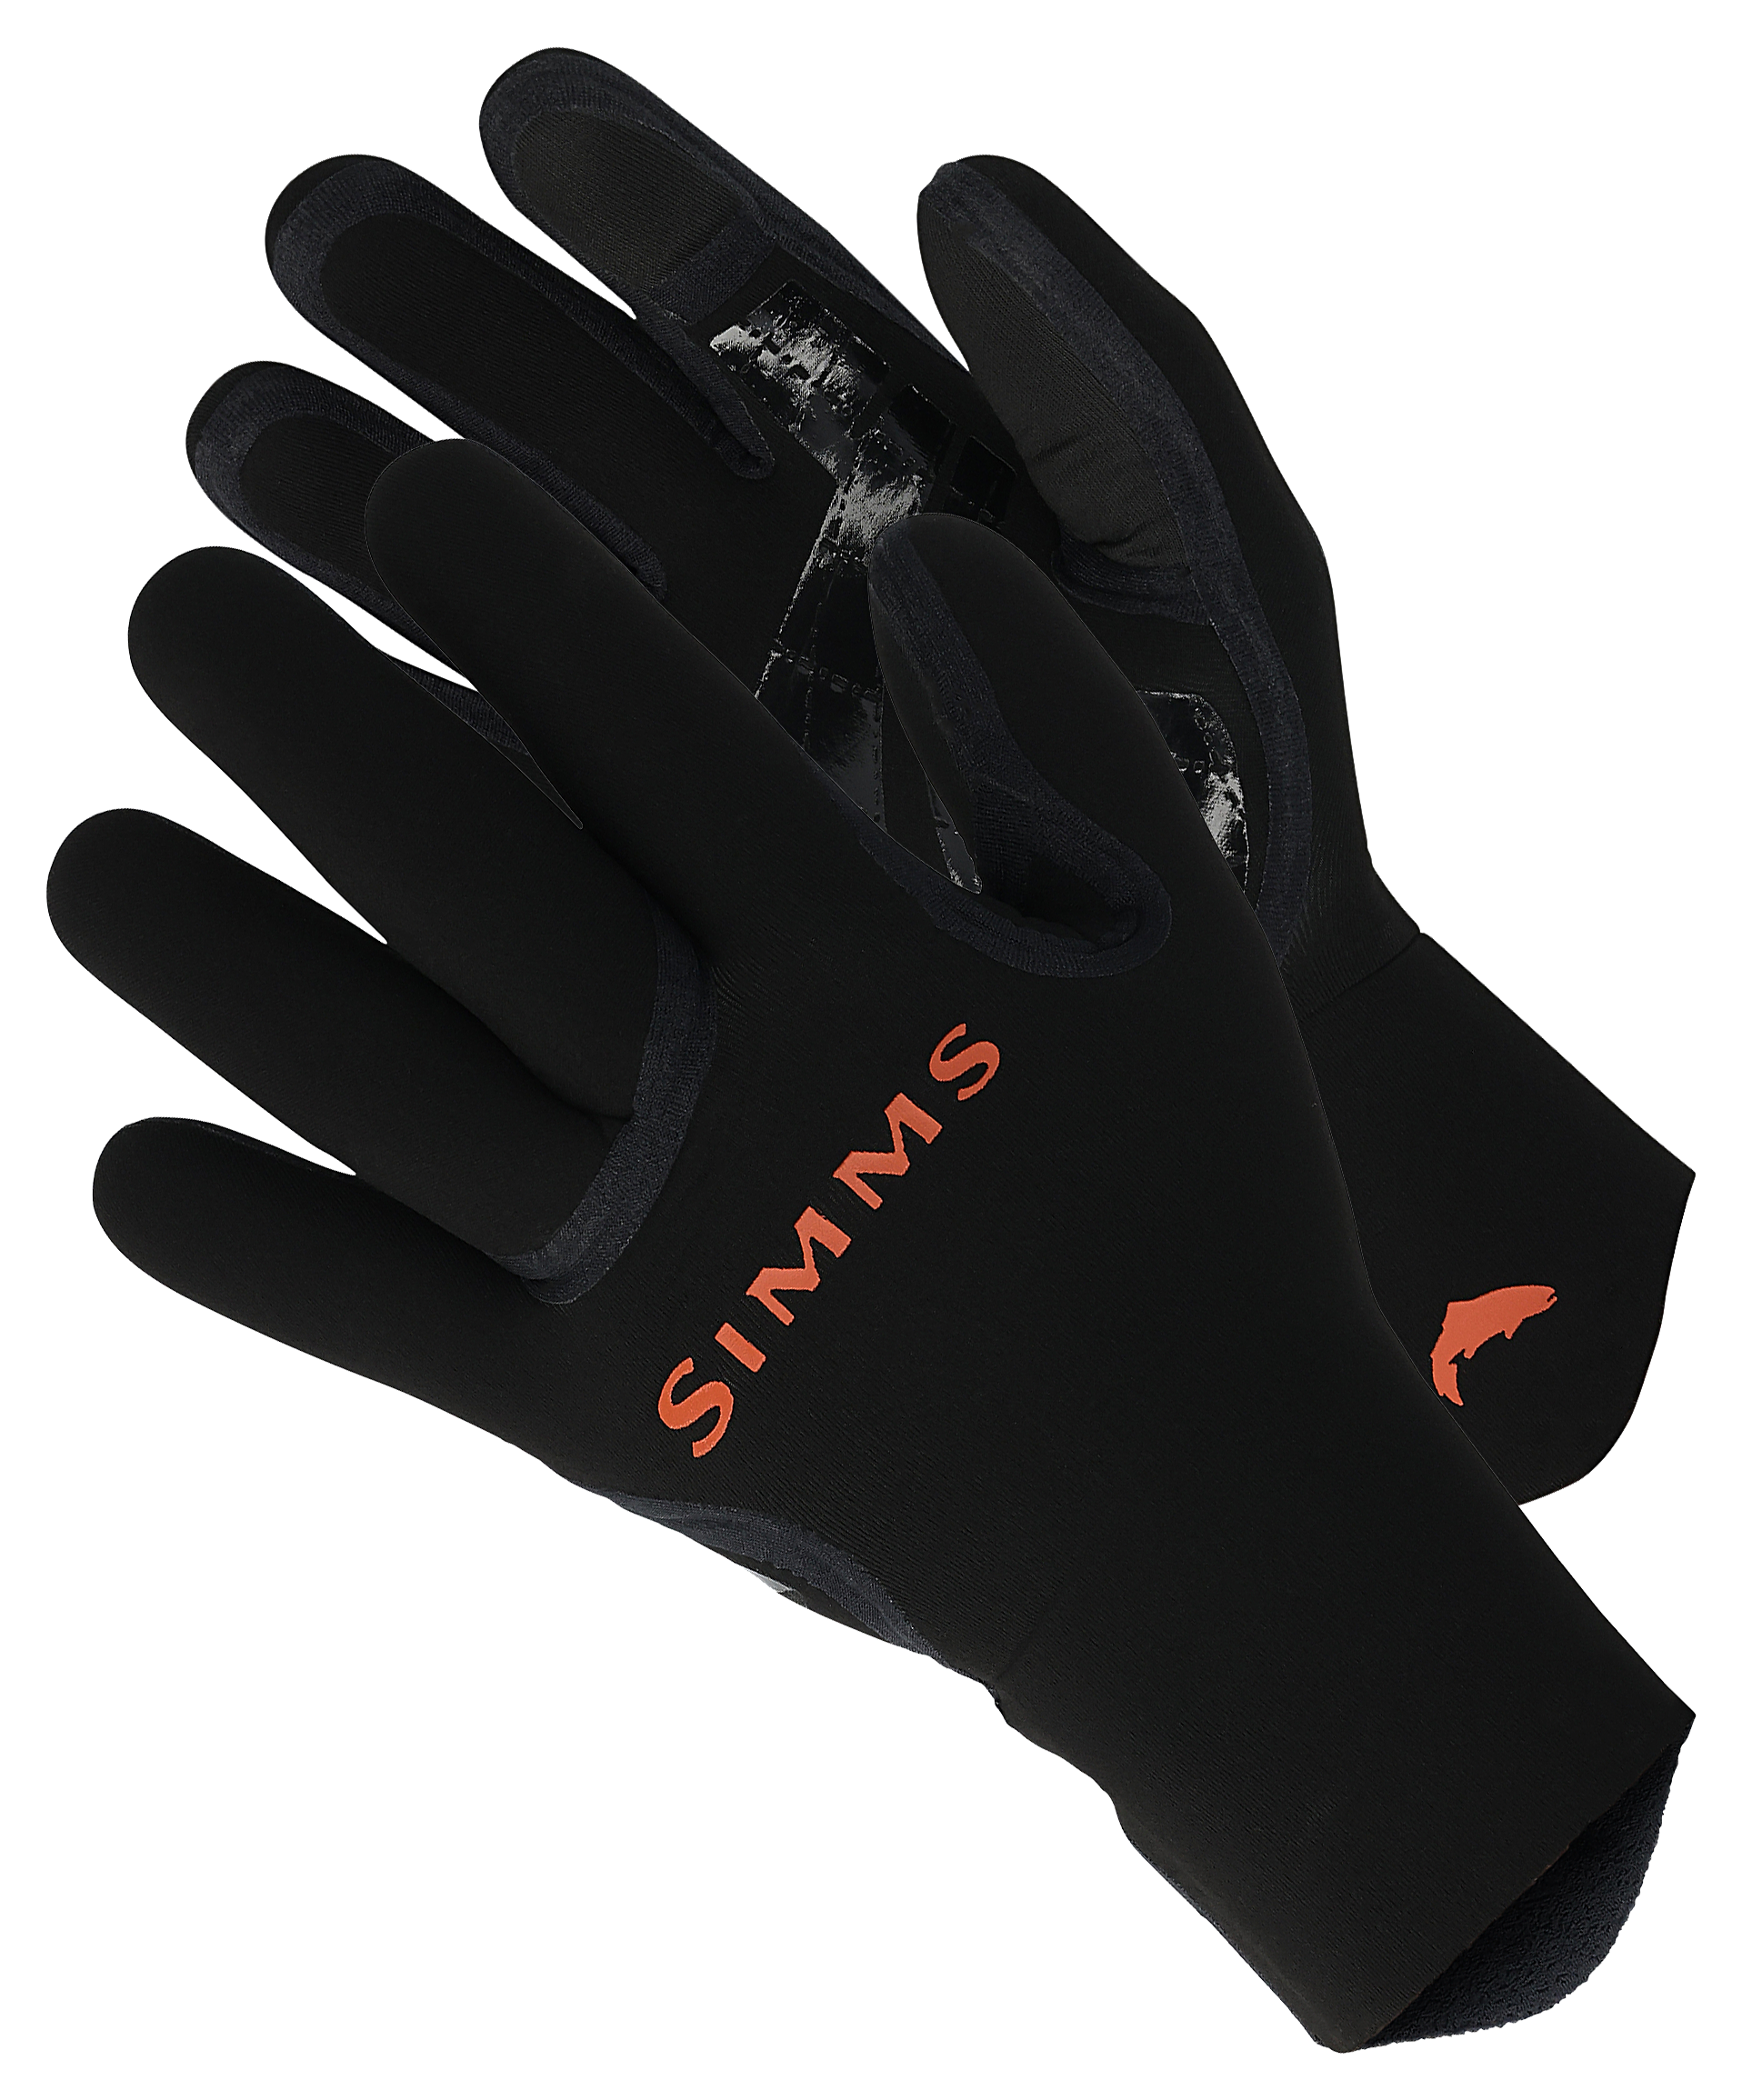 Simms ExStream Neoprene Gloves for Men